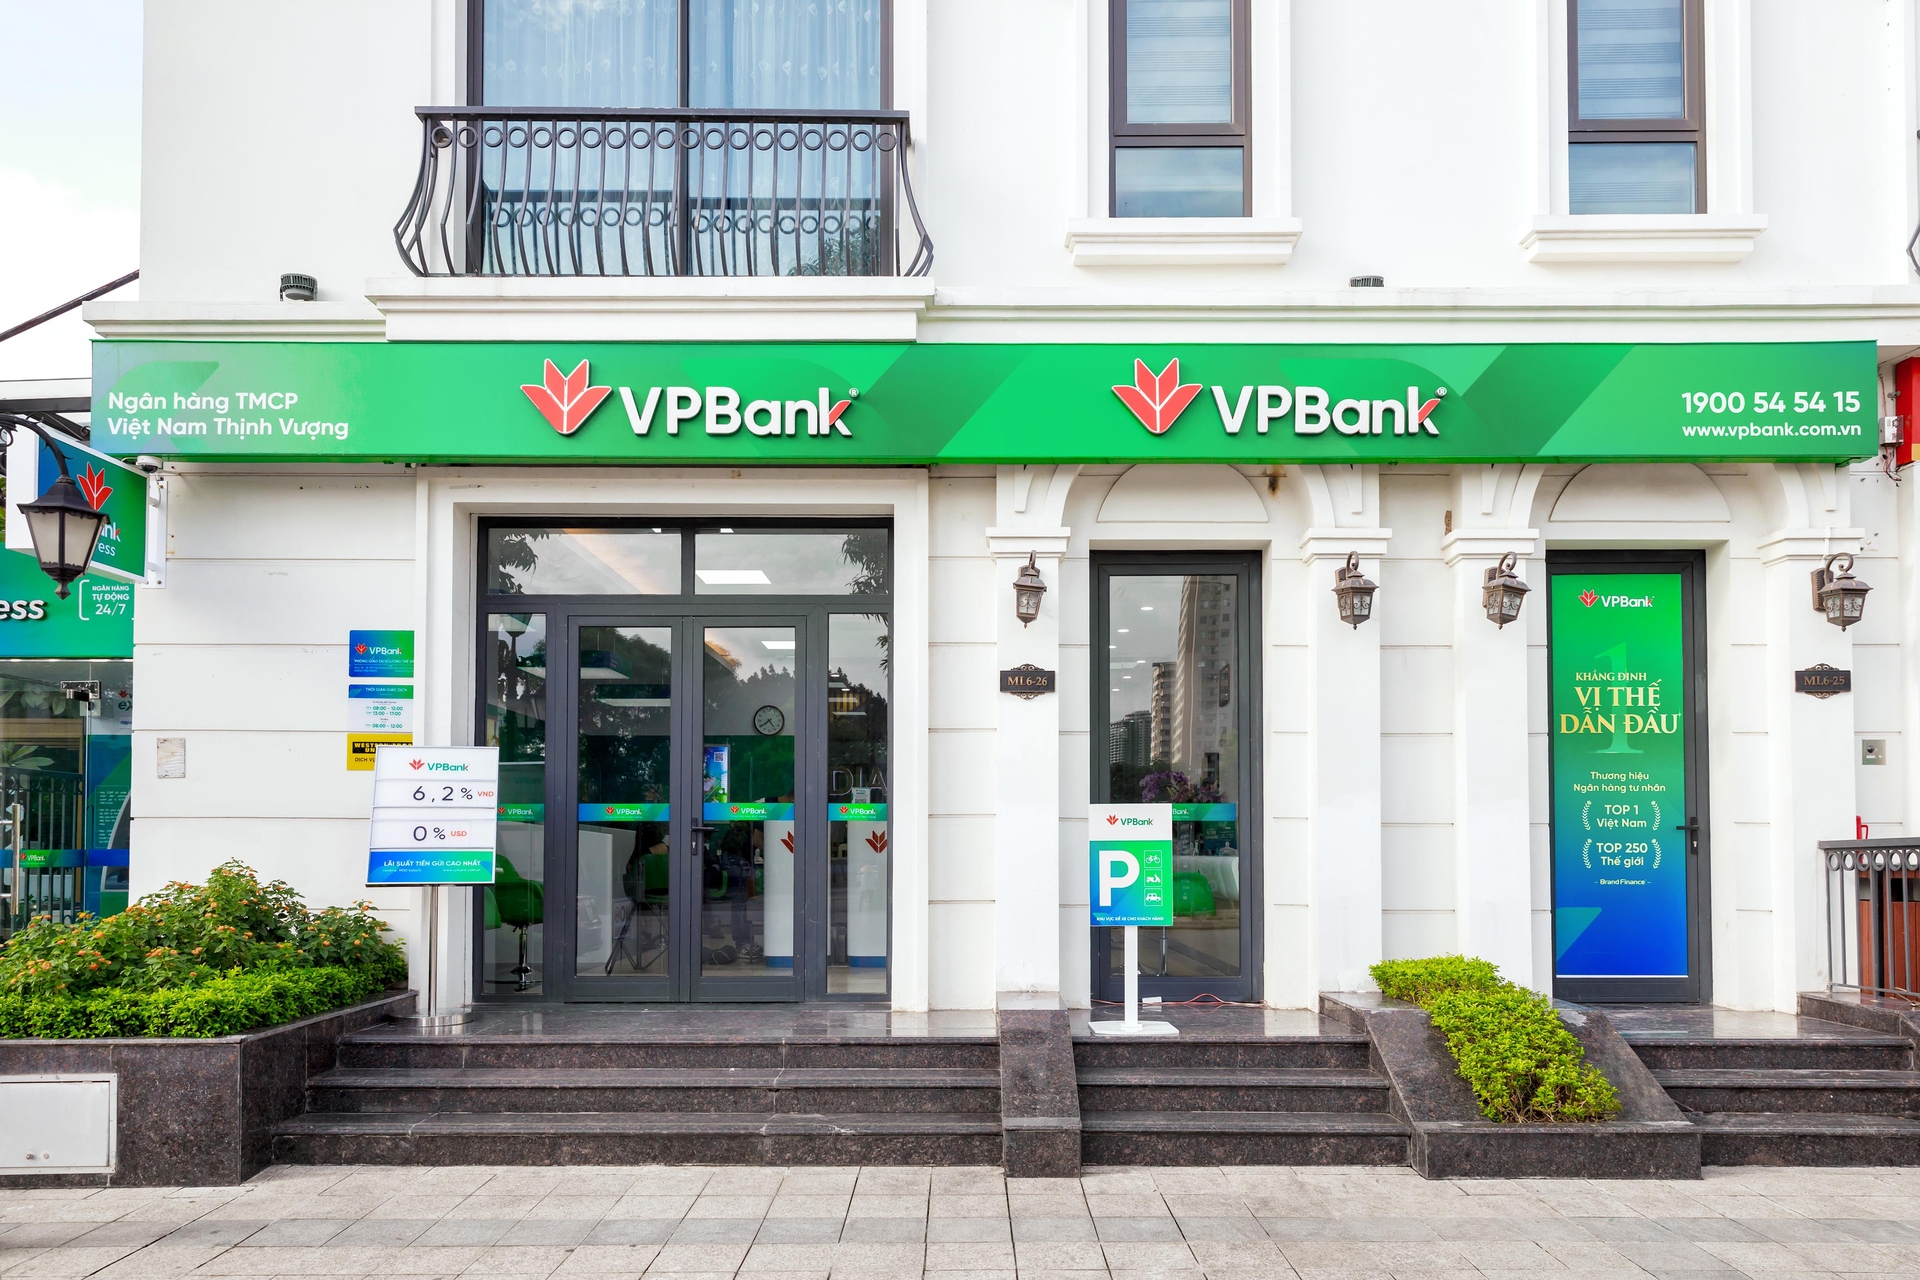 VPBank thuộc Top 3 các ngân hàng có chỉ số về mức độ hài lòng và sẵn sàng giới thiệu thương hiệu (Net Promoter Score - NPS) cao nhất theo khảo sát của Nielsen. Ảnh: HB.